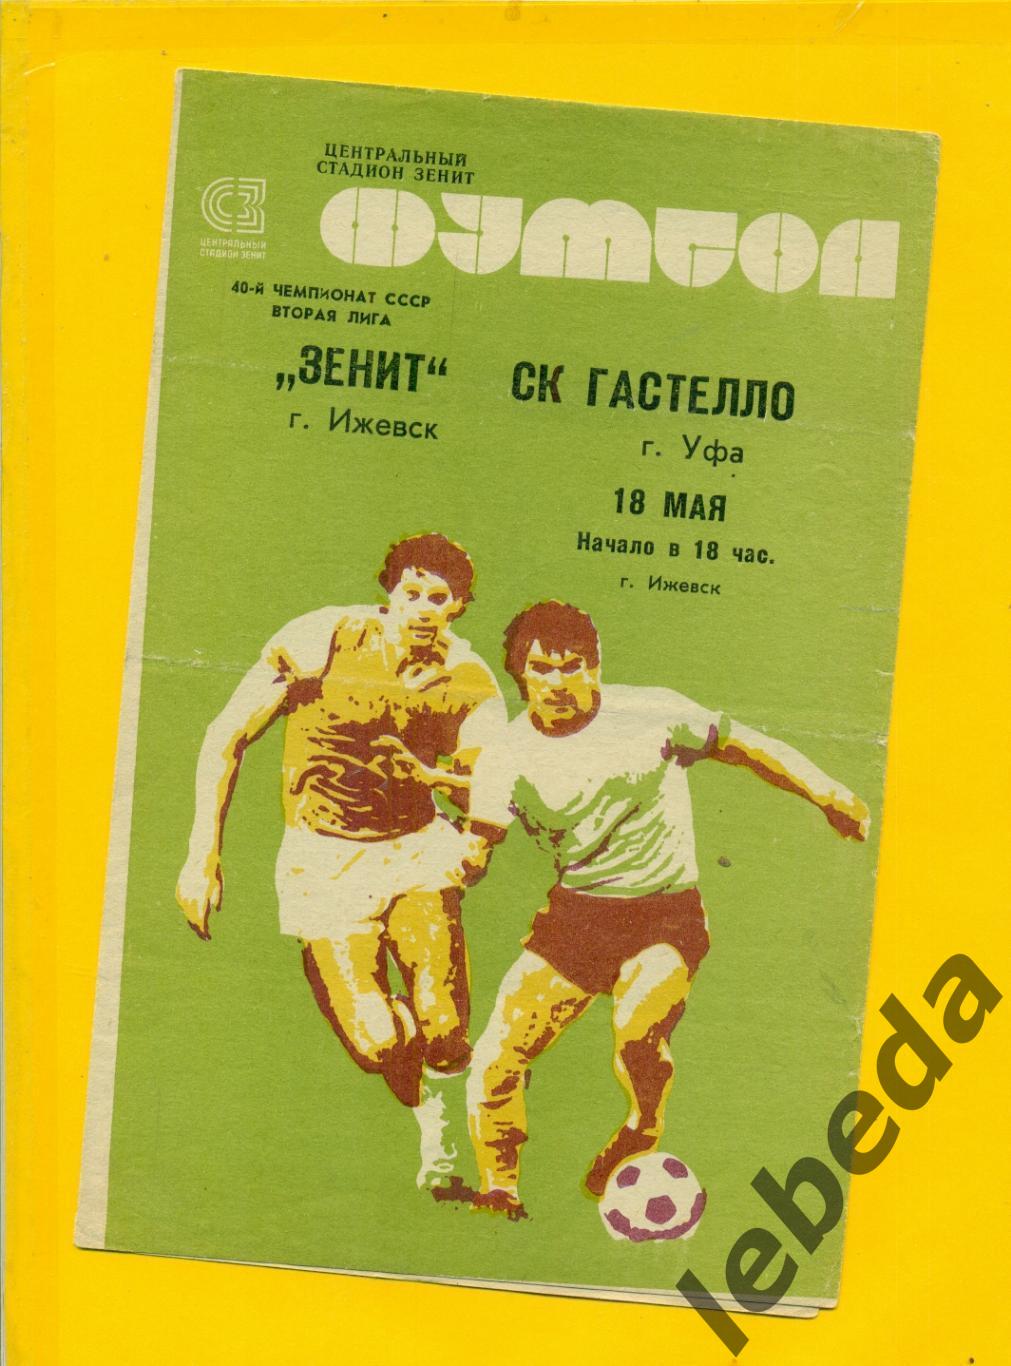 Зенит Ижевск - Гастелло Уфа - 1977 г. ( 18.05.77.)